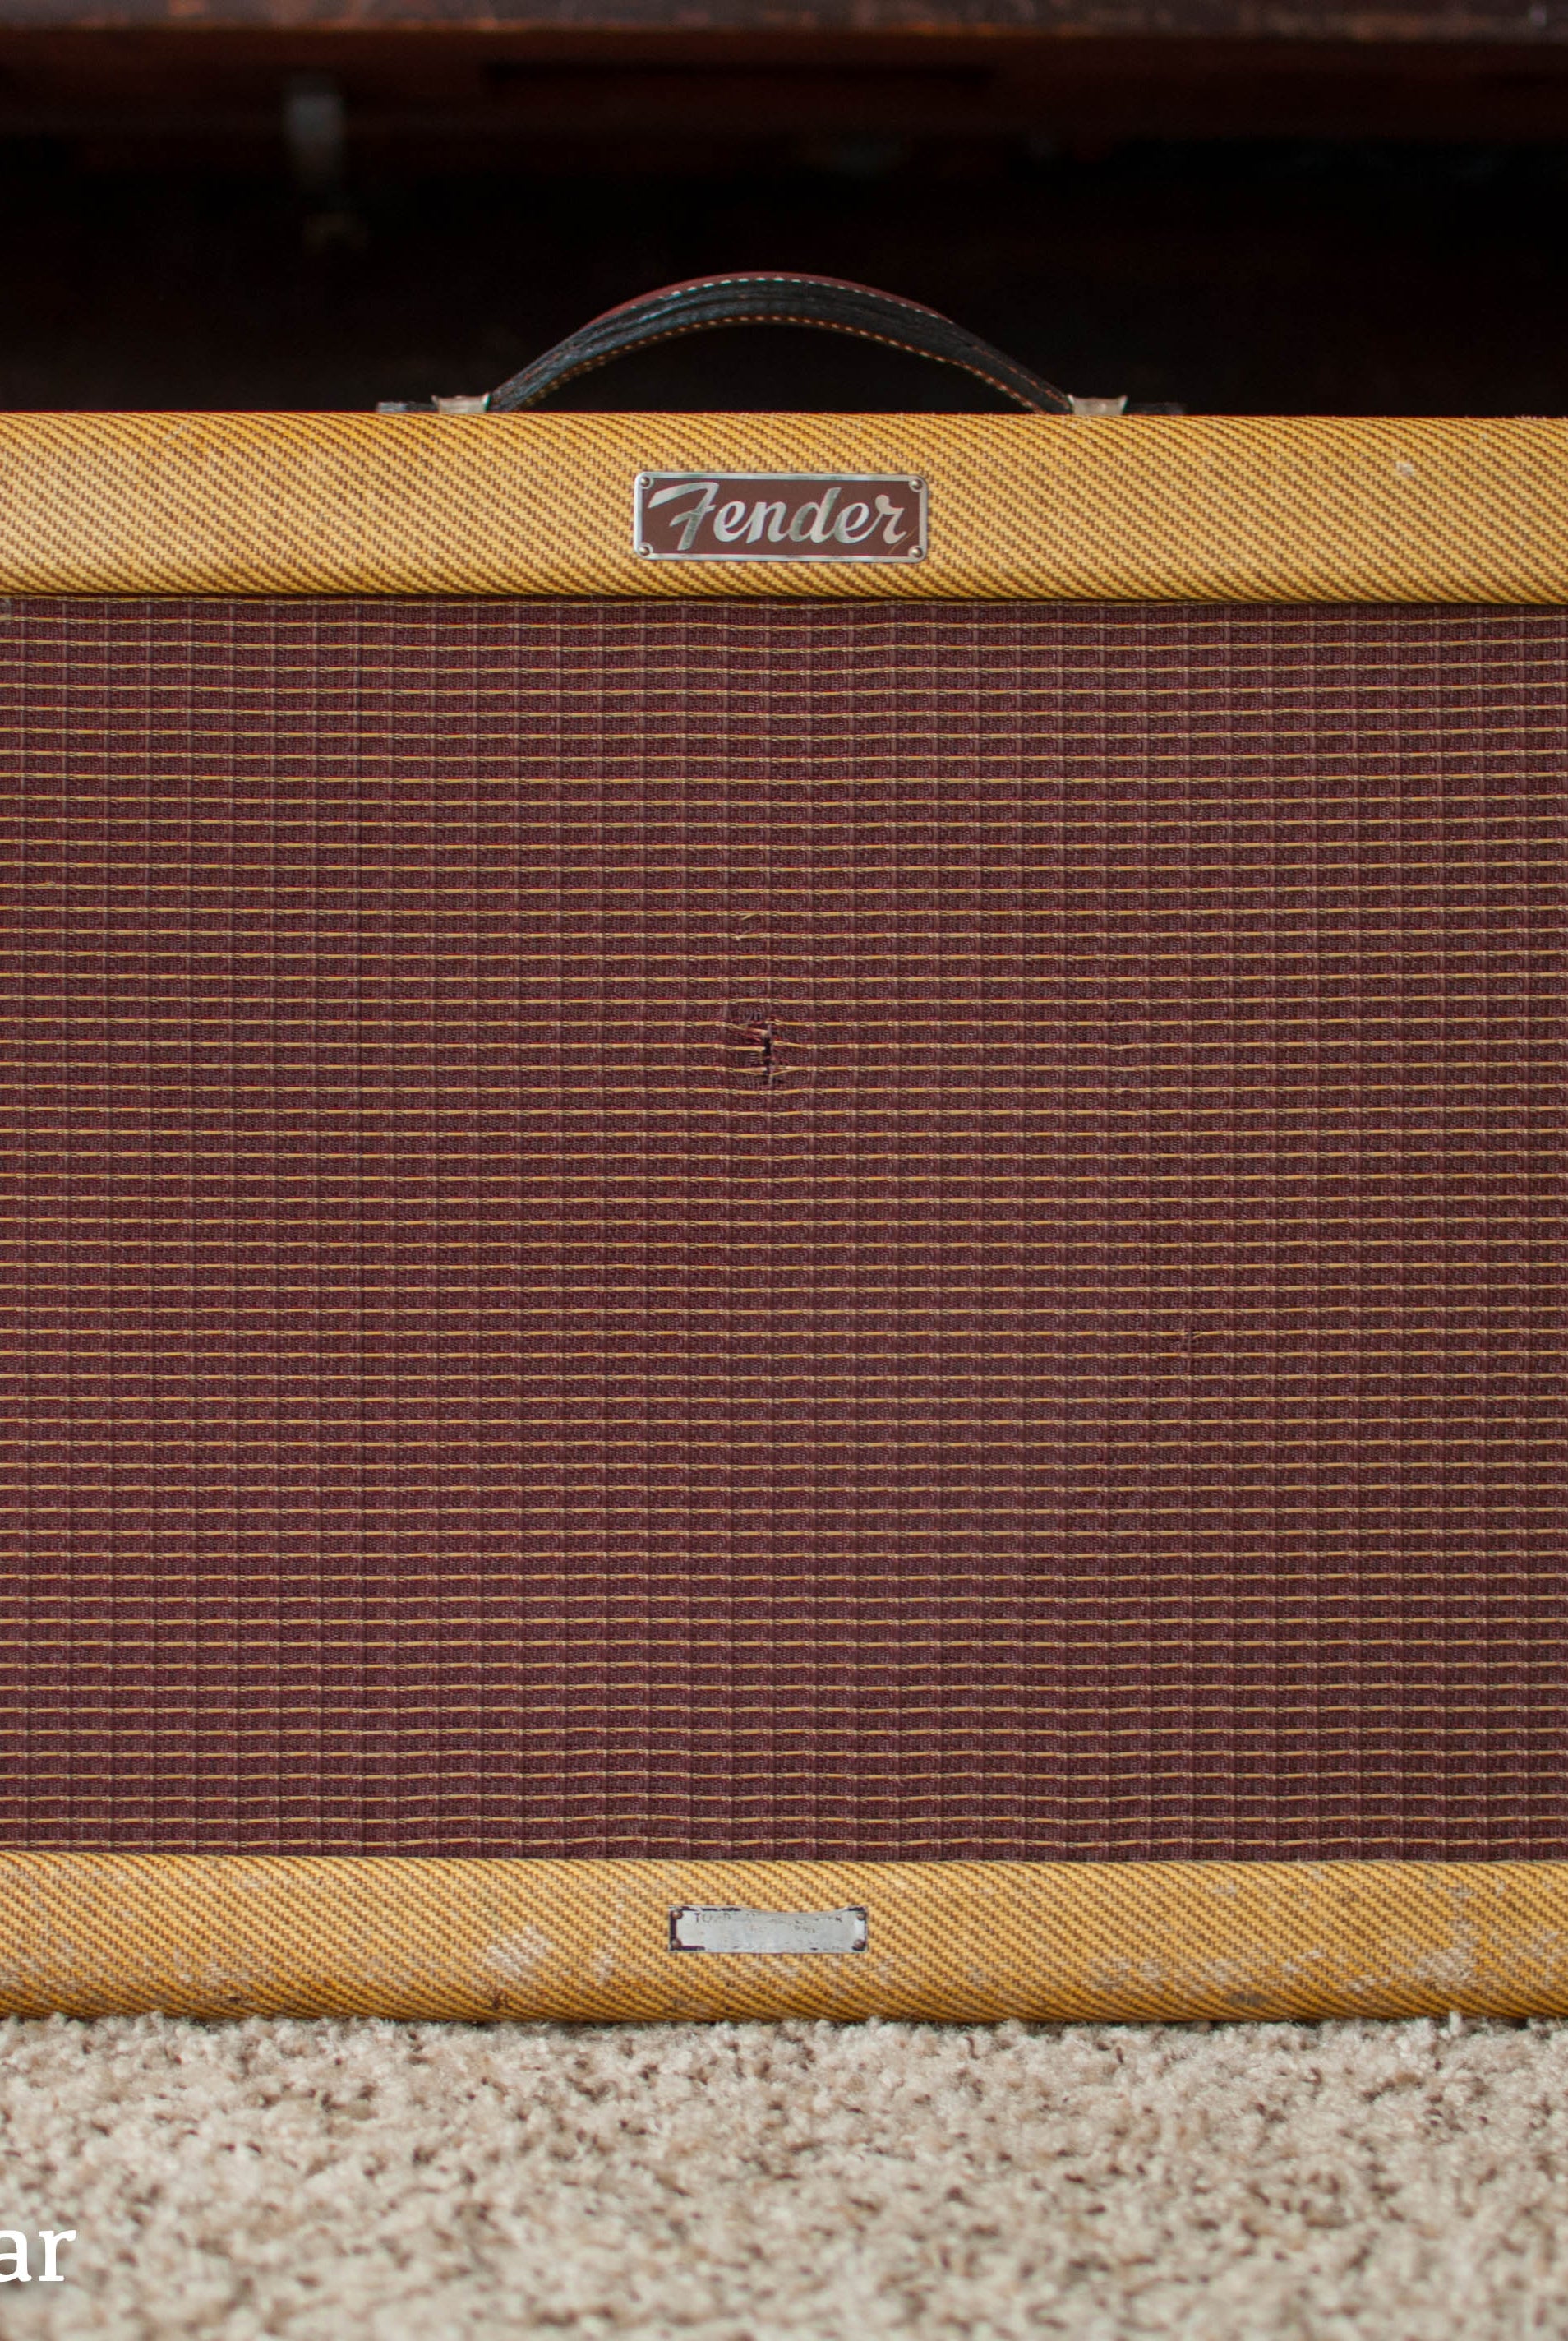 1956 Fender Deluxe Amp guitar amplifier